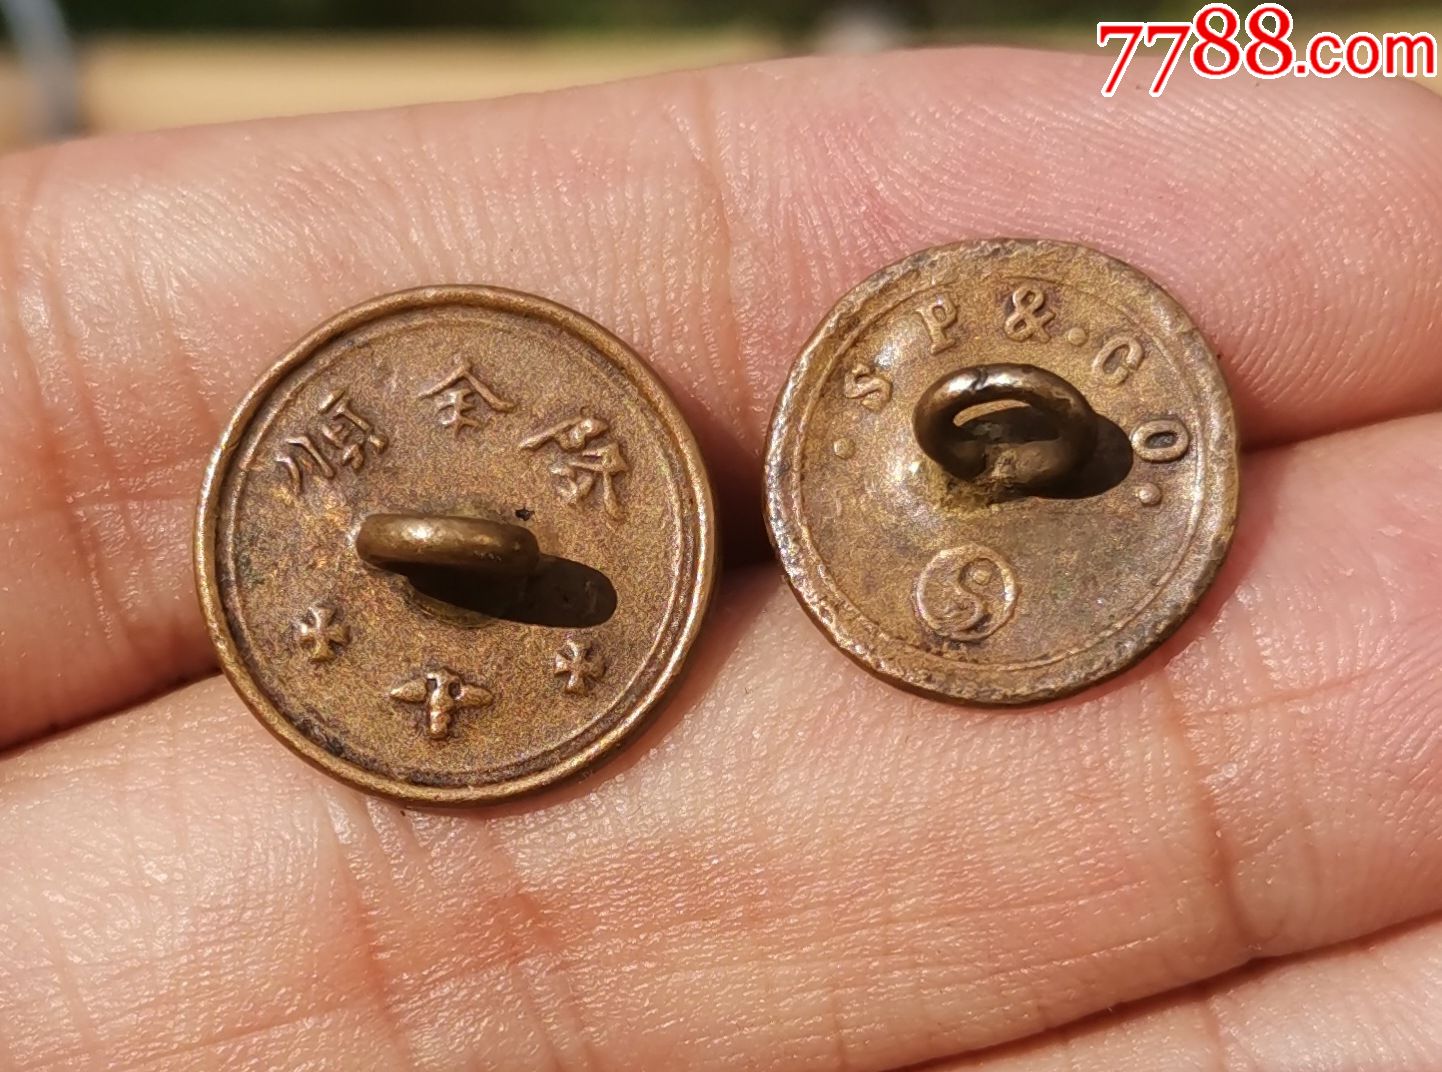 清代民贵字老铜扣子铜鎏金机制币式扣-价格:50.0000元